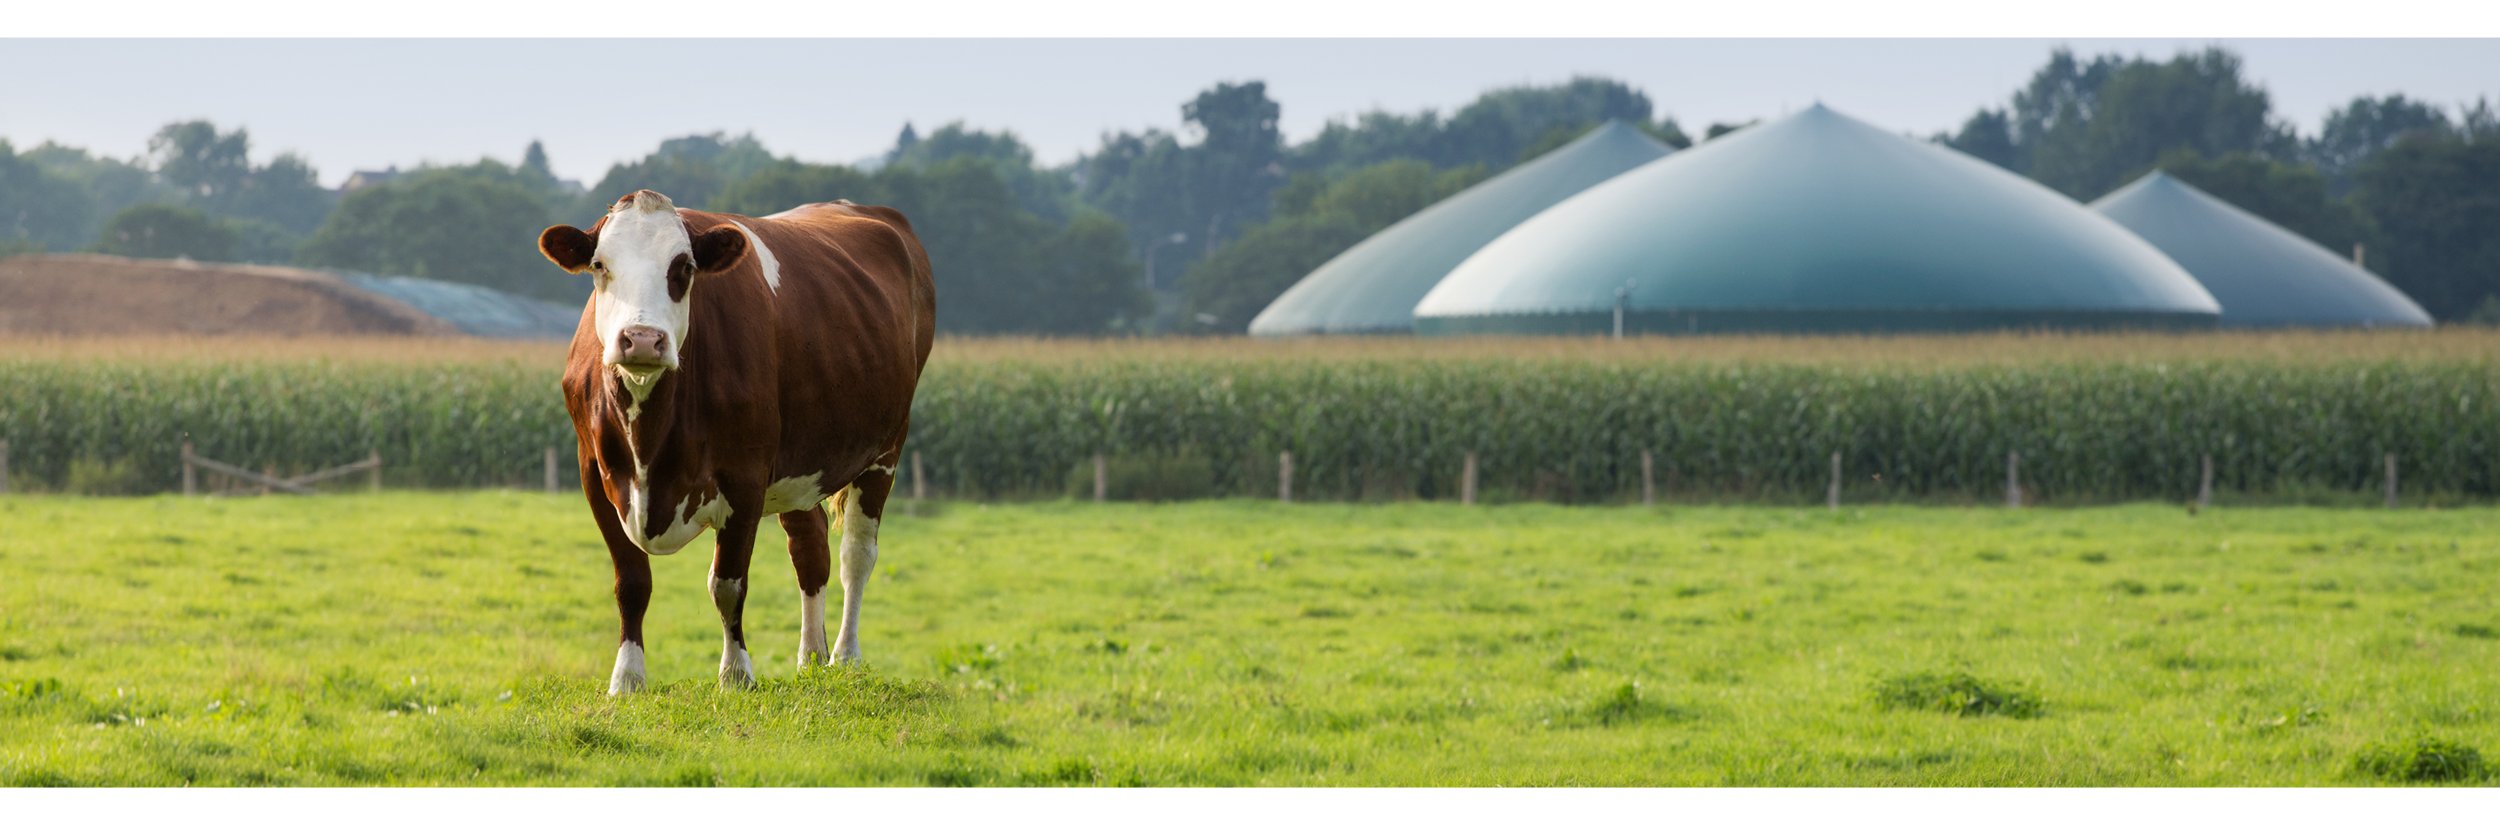 Eine Kuh steht vor einer Biogasanlage, auf der Weide